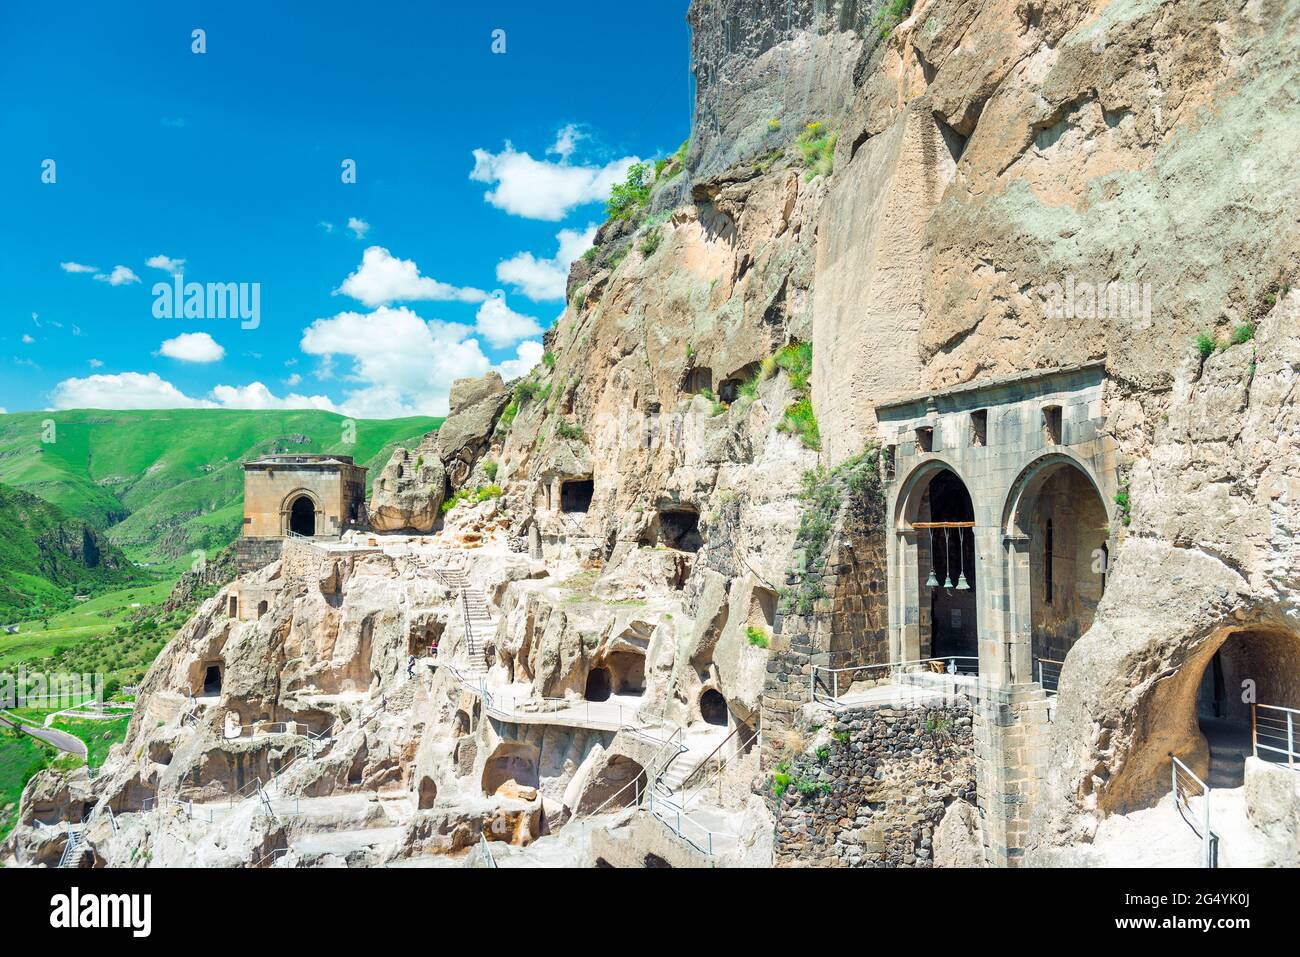 Vista de la antigua ciudad cueva de Vardzia, tallada en la roca - una famosa atracción de Georgia Foto de stock